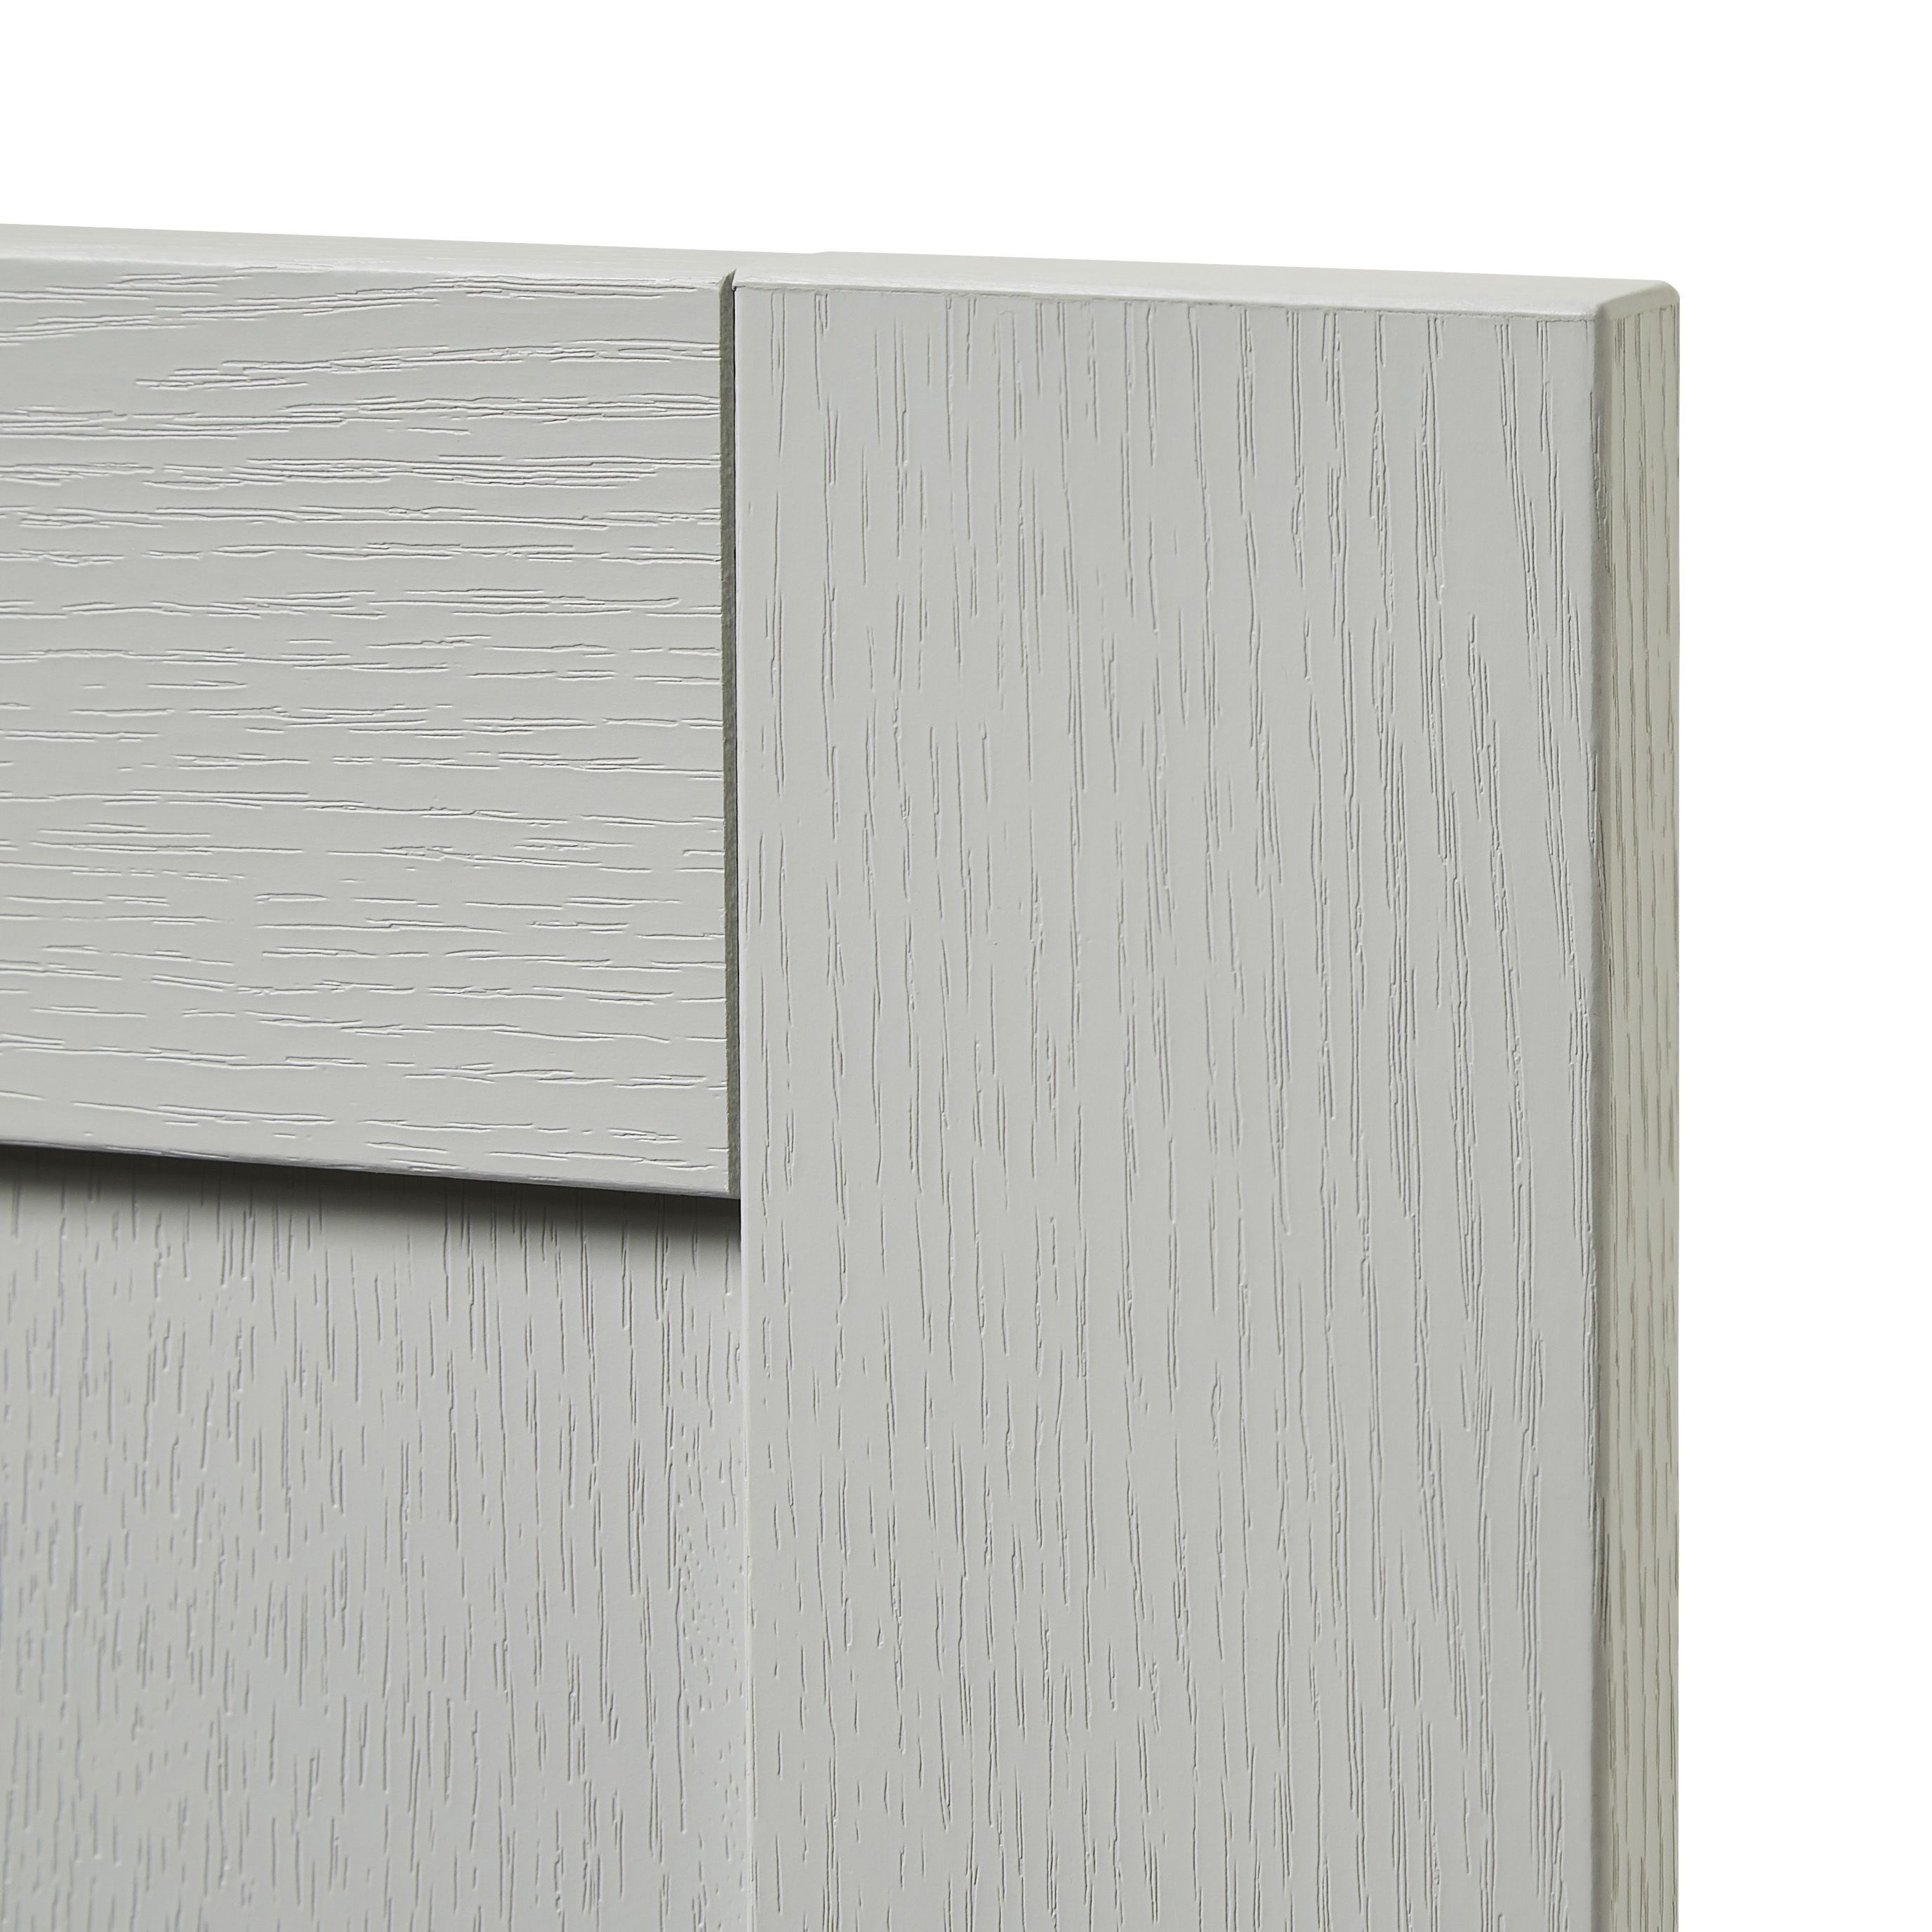 GoodHome Alpinia Matt grey painted wood effect shaker Drawer front, bridging door & bi fold door, (W)800mm (H)356mm (T)18mm